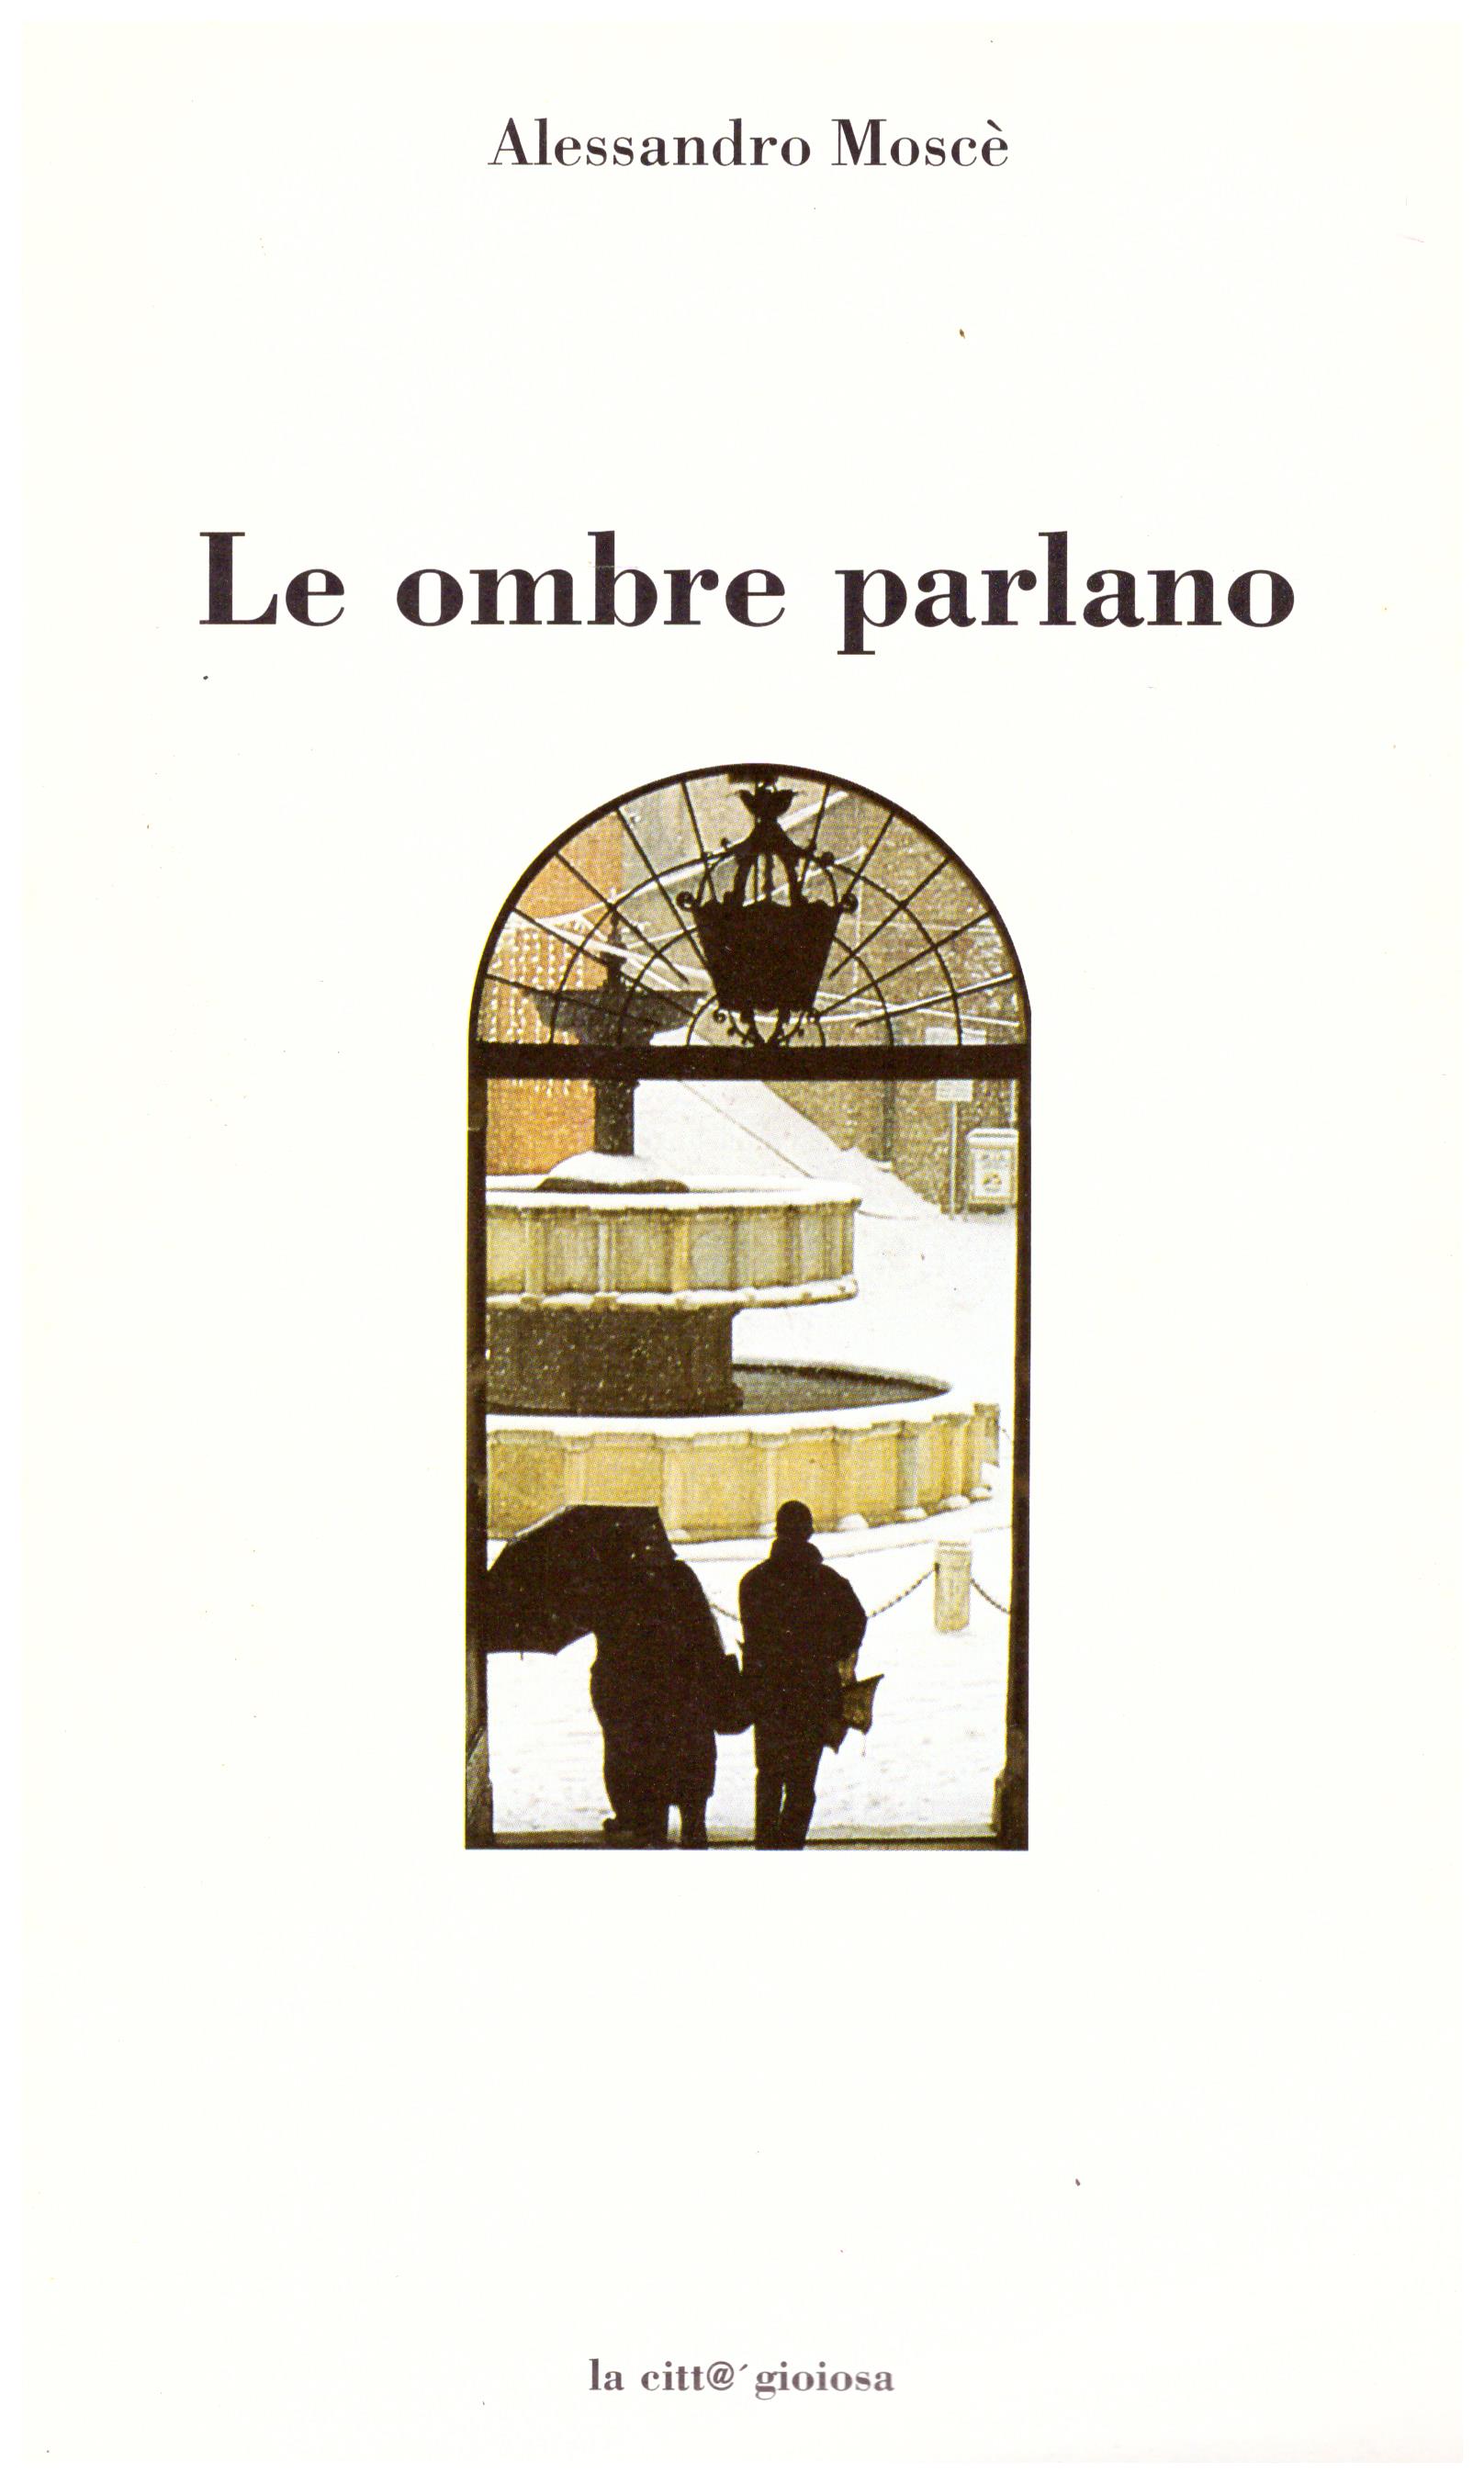 Titolo: Le ombre parlano Autore: Alessandro Moscè Editore: Conerografica, 2000